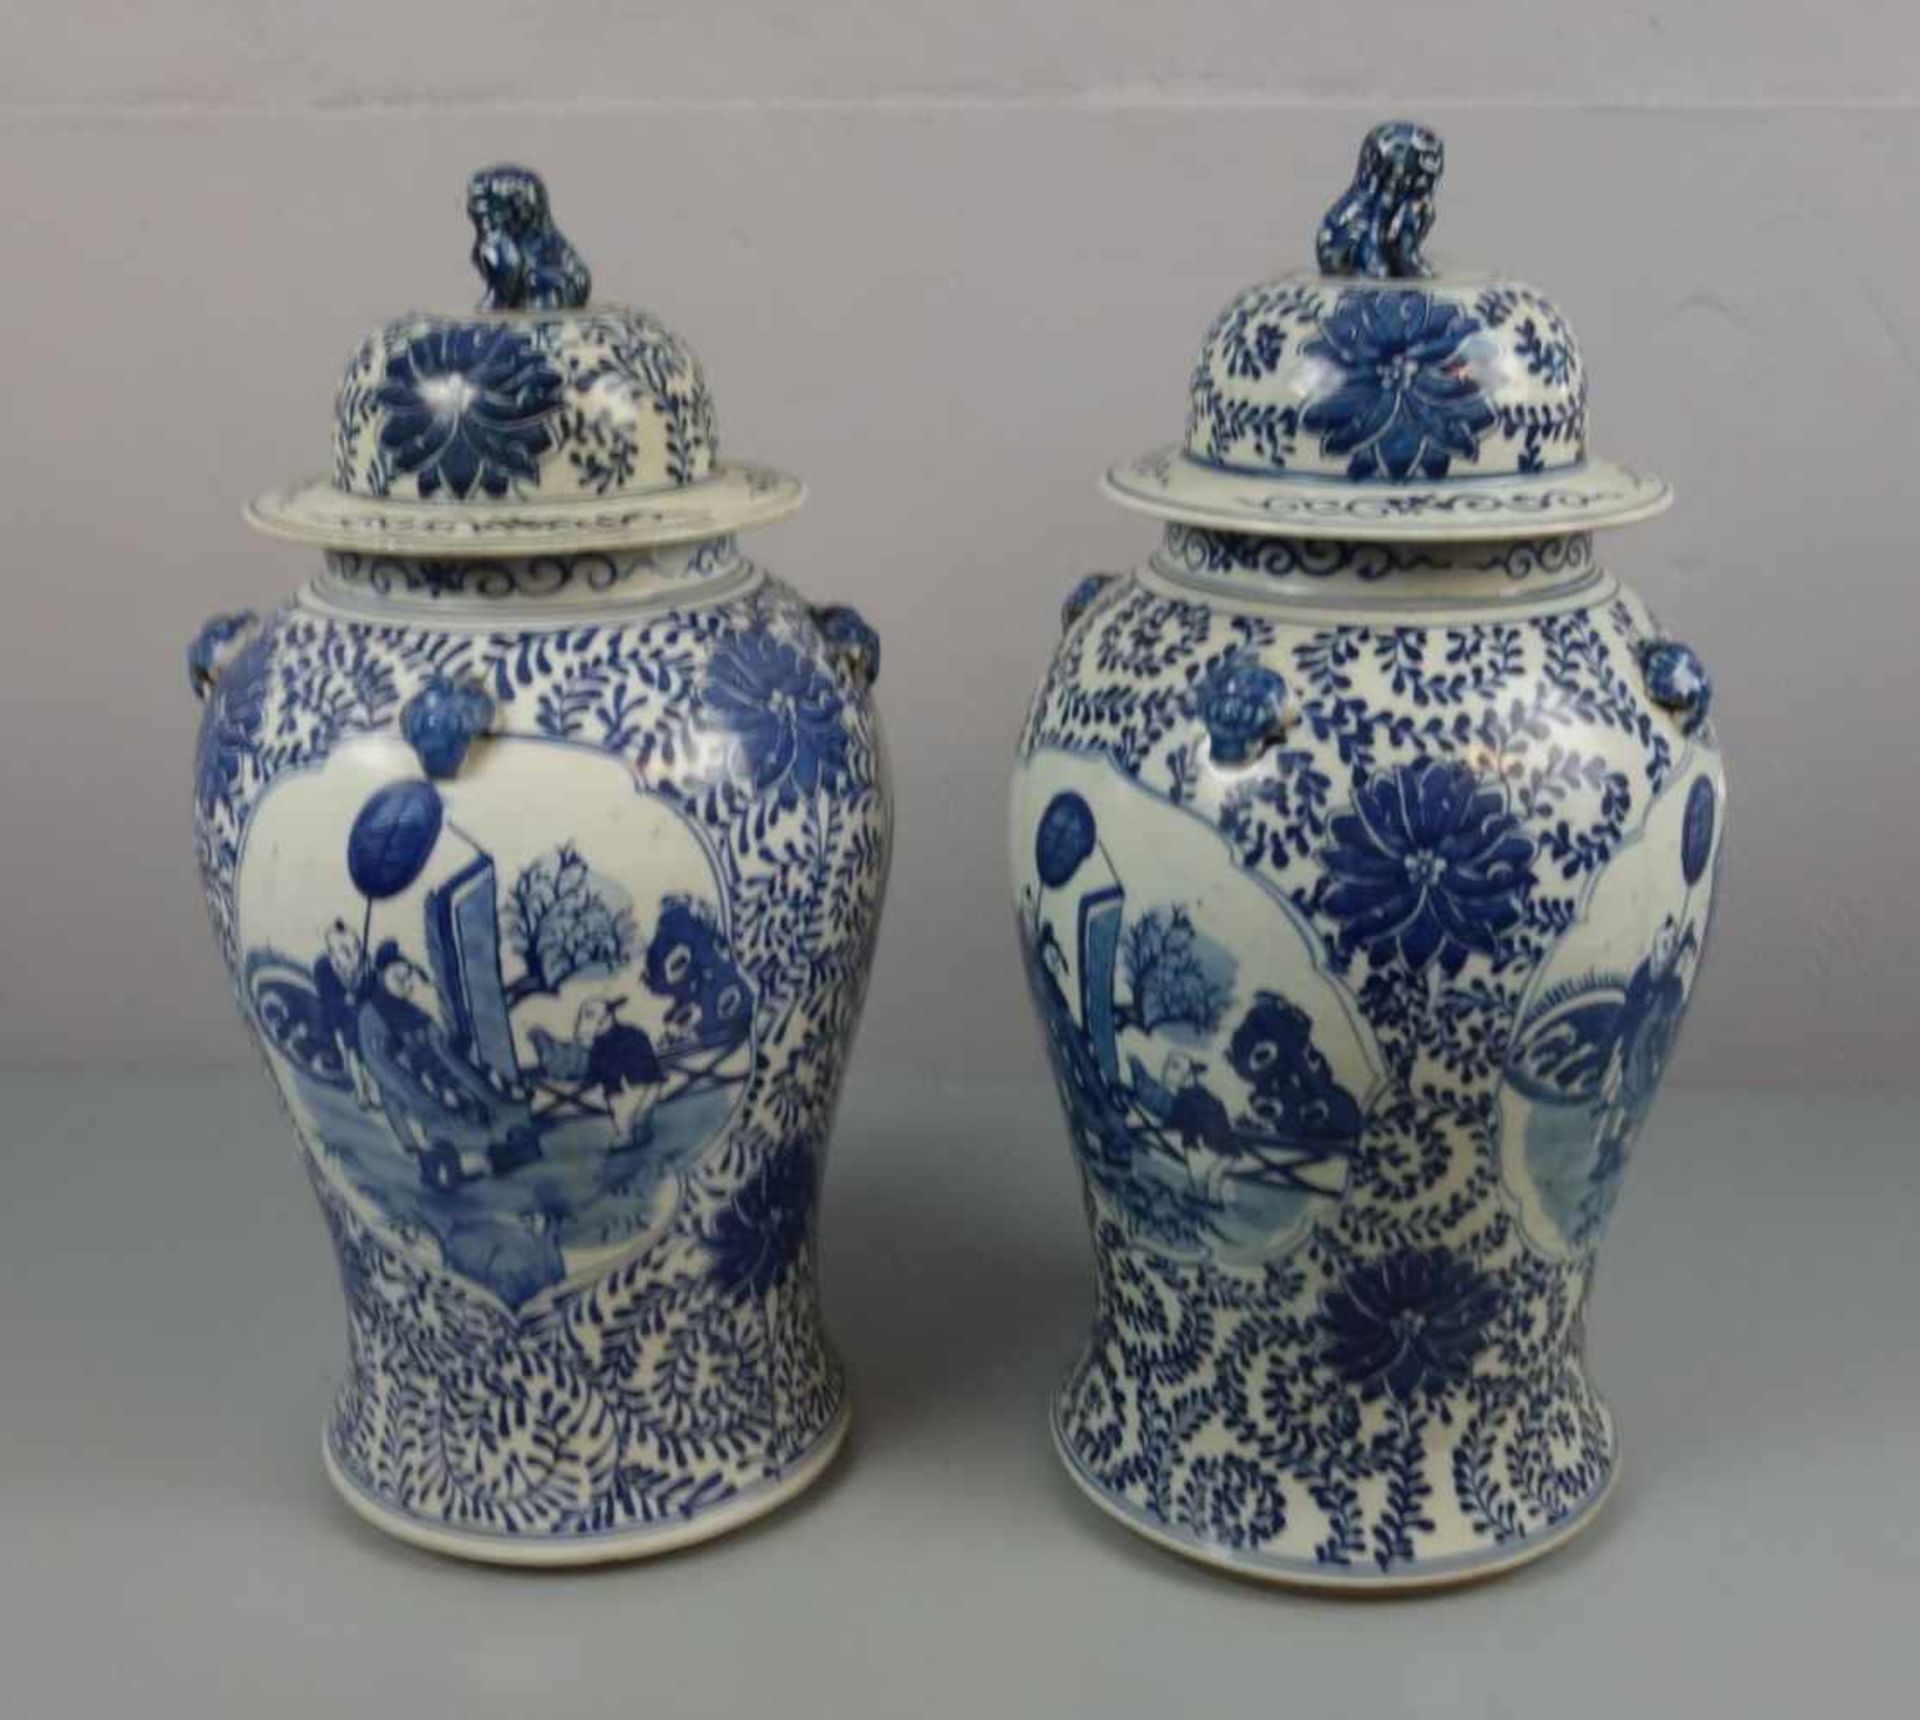 PAAR CHINESISCHE DECKELVASEN / pair of chinese vases, late Qing dynasty, Porzellan (ungemarkt), - Bild 3 aus 5